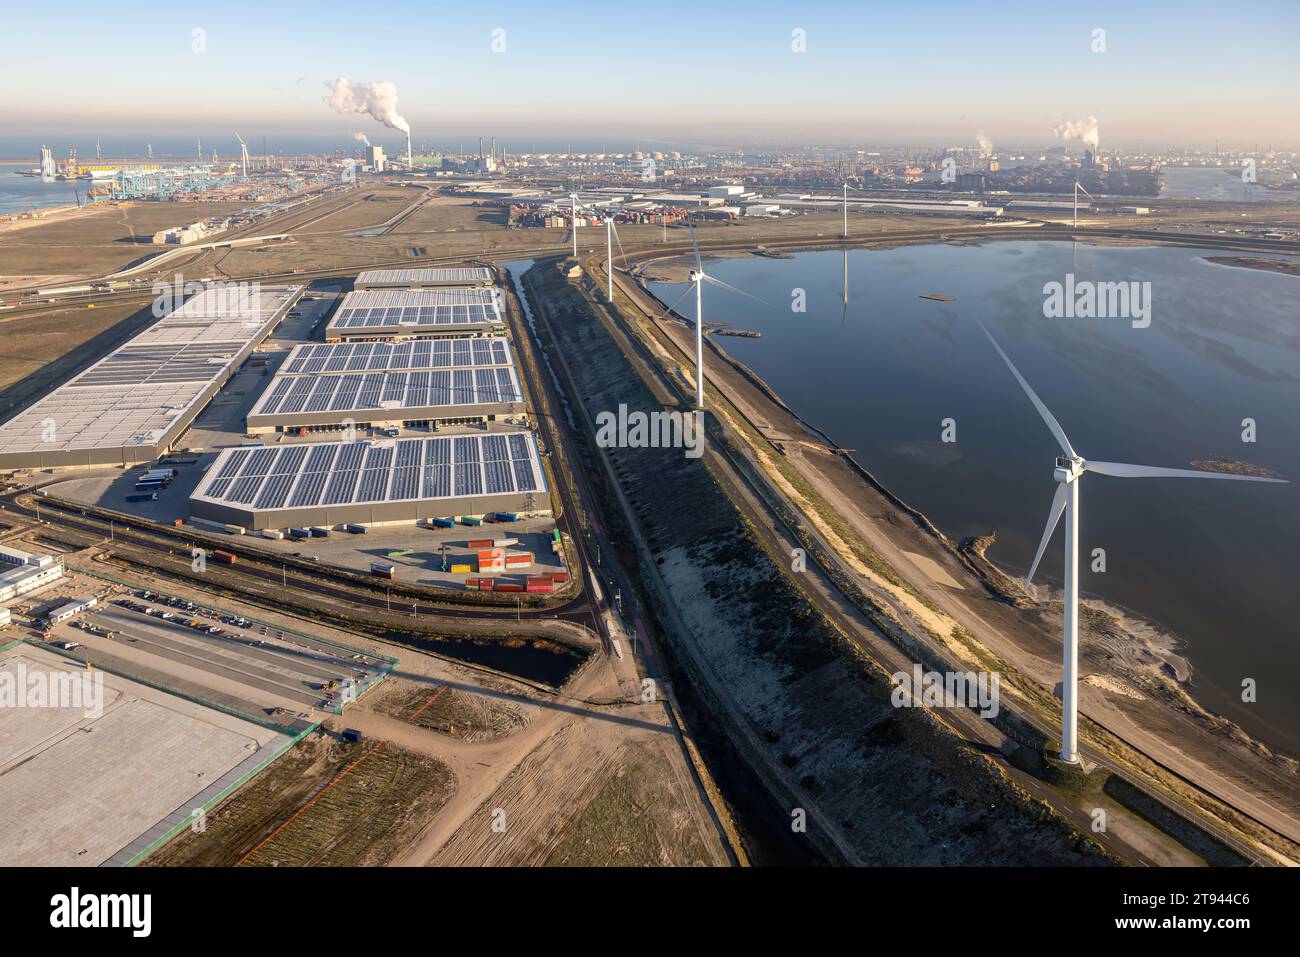 Vue aérienne zone industrielle Maasvlakte dans le port de Rotterdam. Usine chimique à l'horizon Banque D'Images